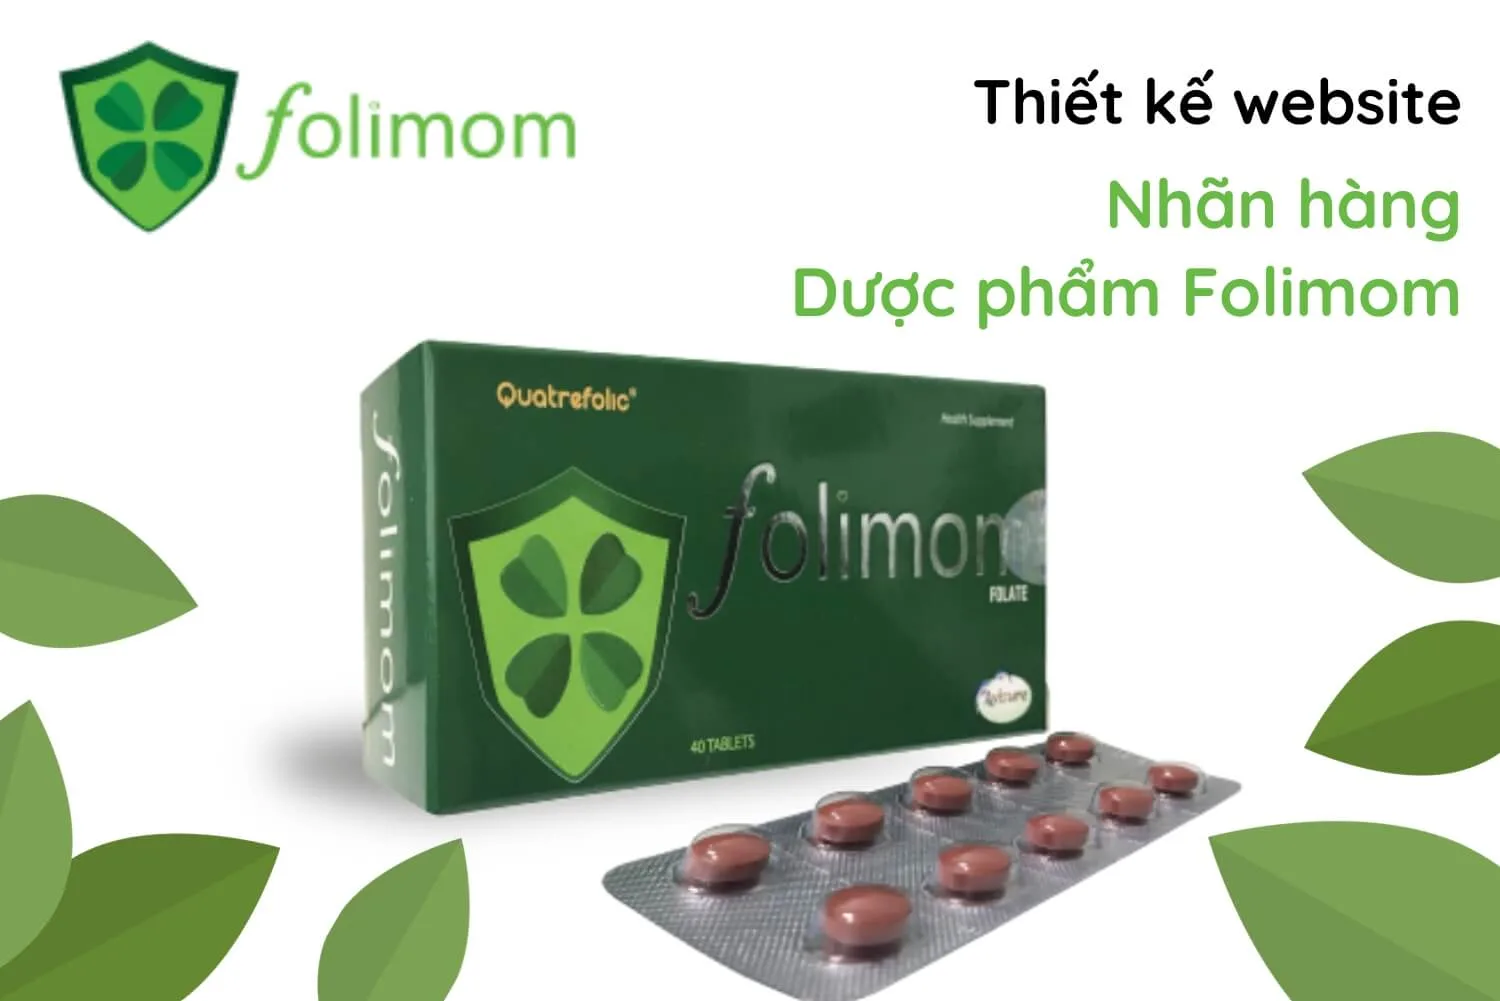 Thiết kế website nhãn hàng dược phẩm Folimom